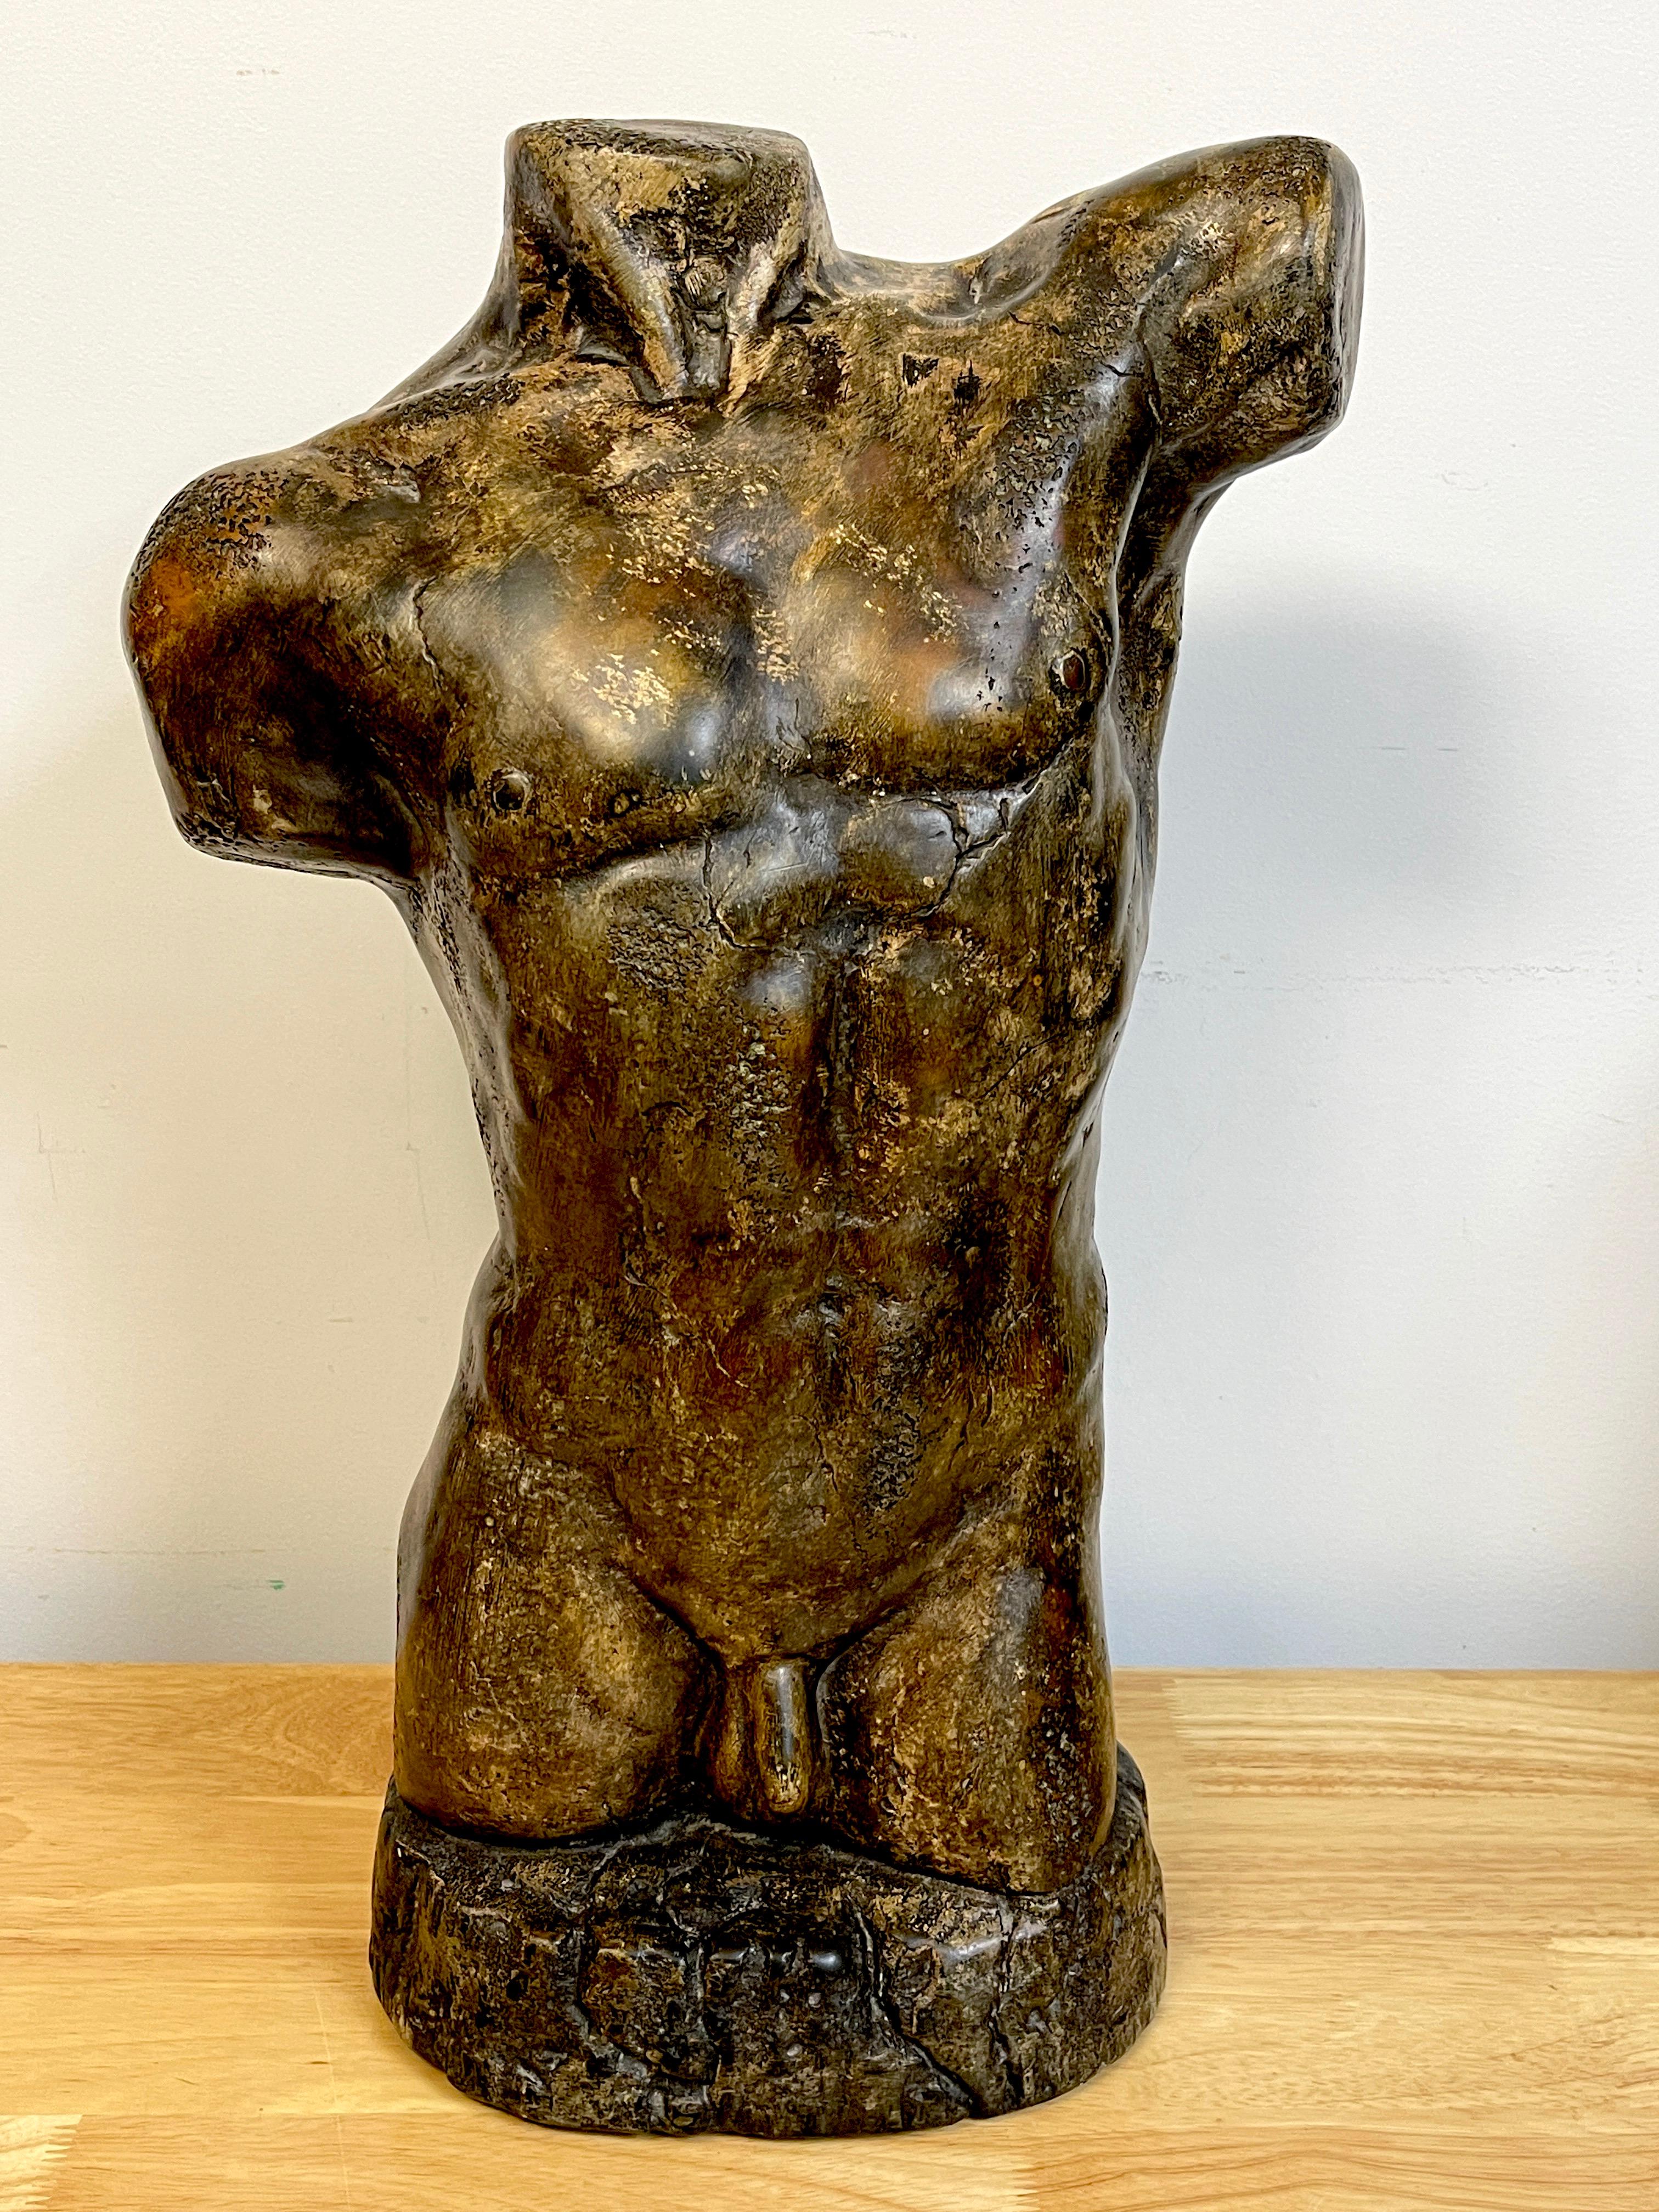 Französische moderne bronzierte Gipsskulptur eines männlichen nackten Torsos, möglicherweise eine Maquette. Nicht signiert.
Eine kühne, gut modellierte Skulptur mit einer schönen Patina und Textur. Es handelt sich um einen umfangreichen